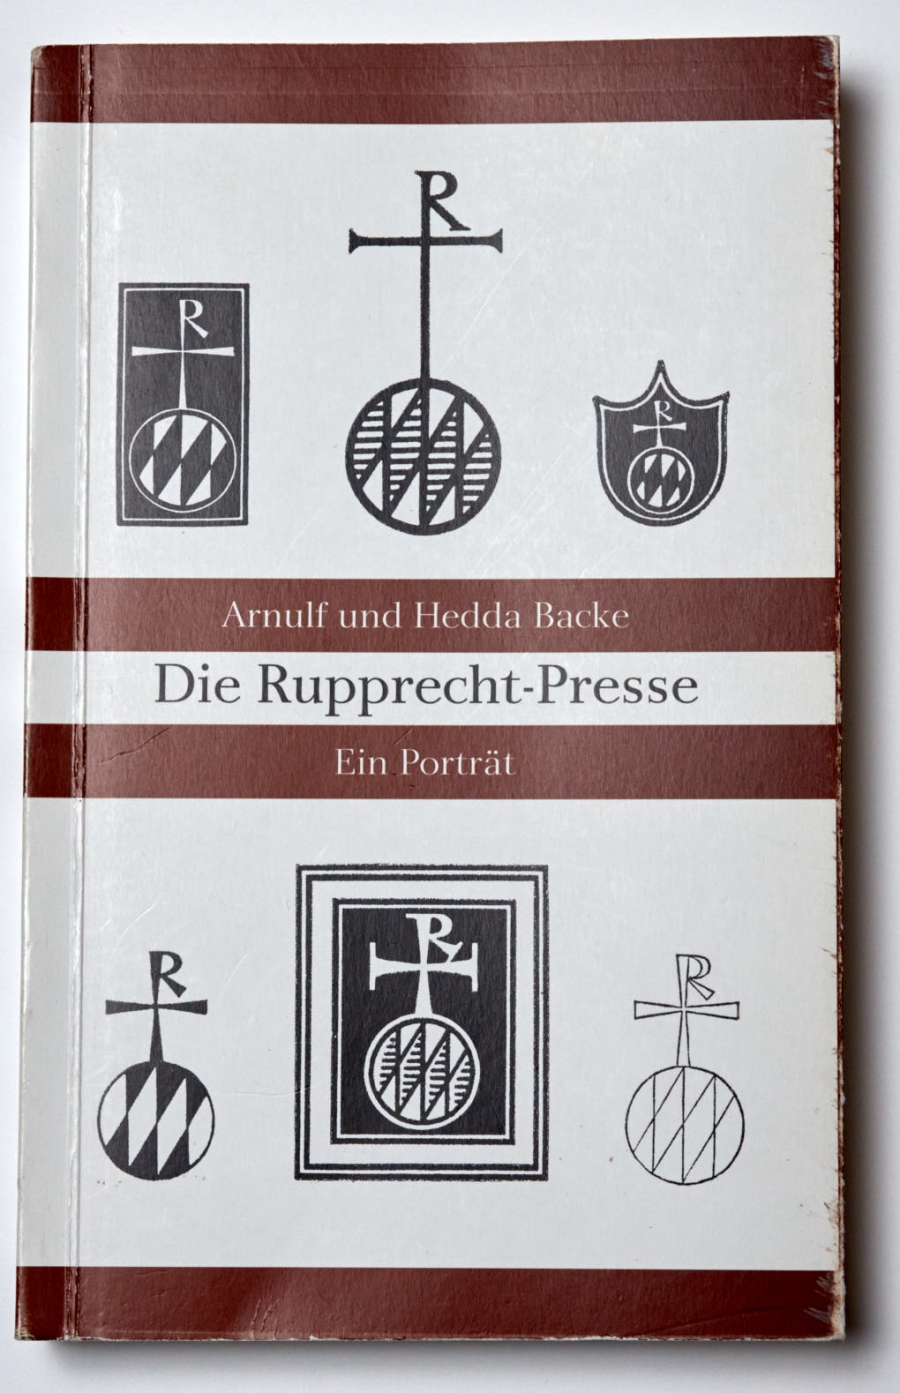 Arnulf und Hedda Backe: Die Rupprecht-Presse. Ein Porträt